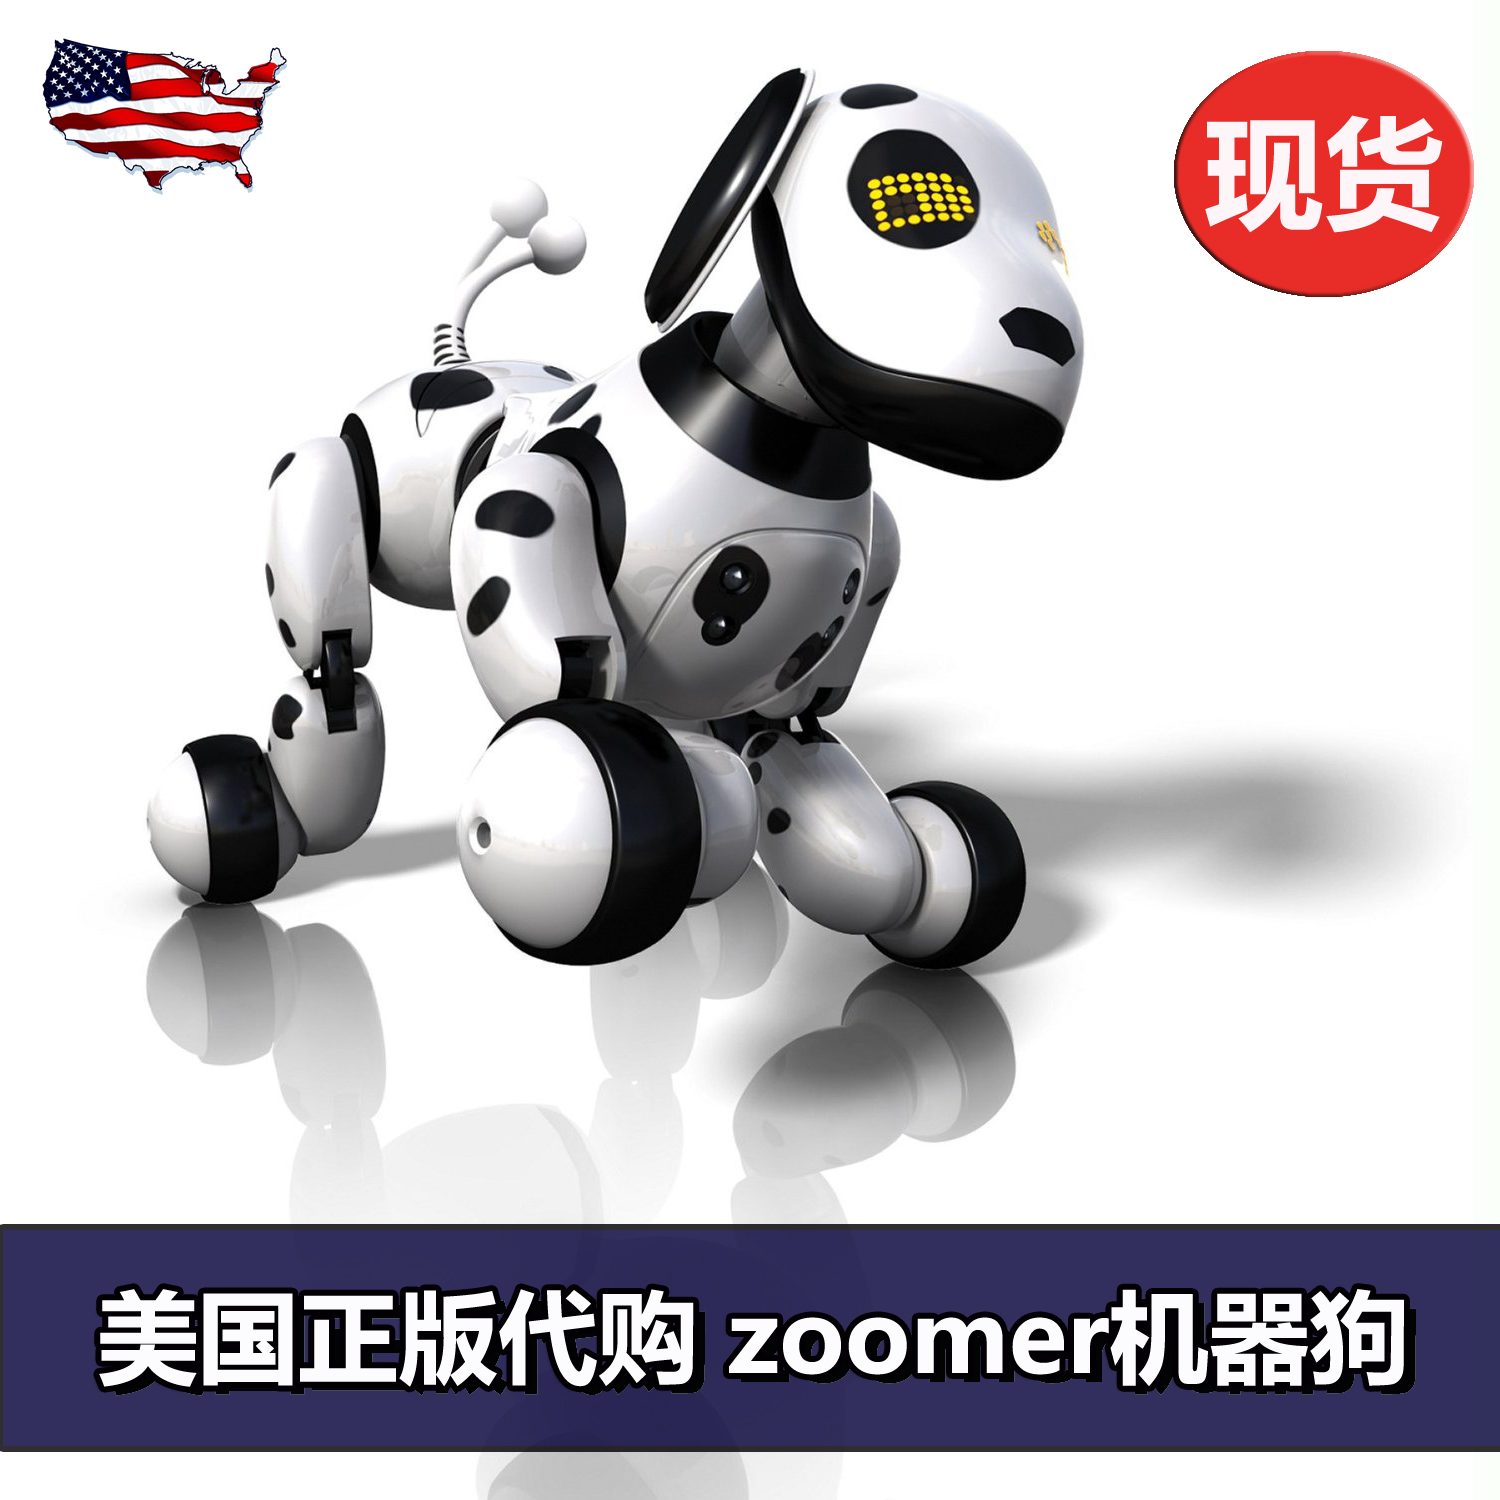 现货 美国正版代购 zoomer机器狗 机器人 智能玩具高科技宠物玩具折扣优惠信息